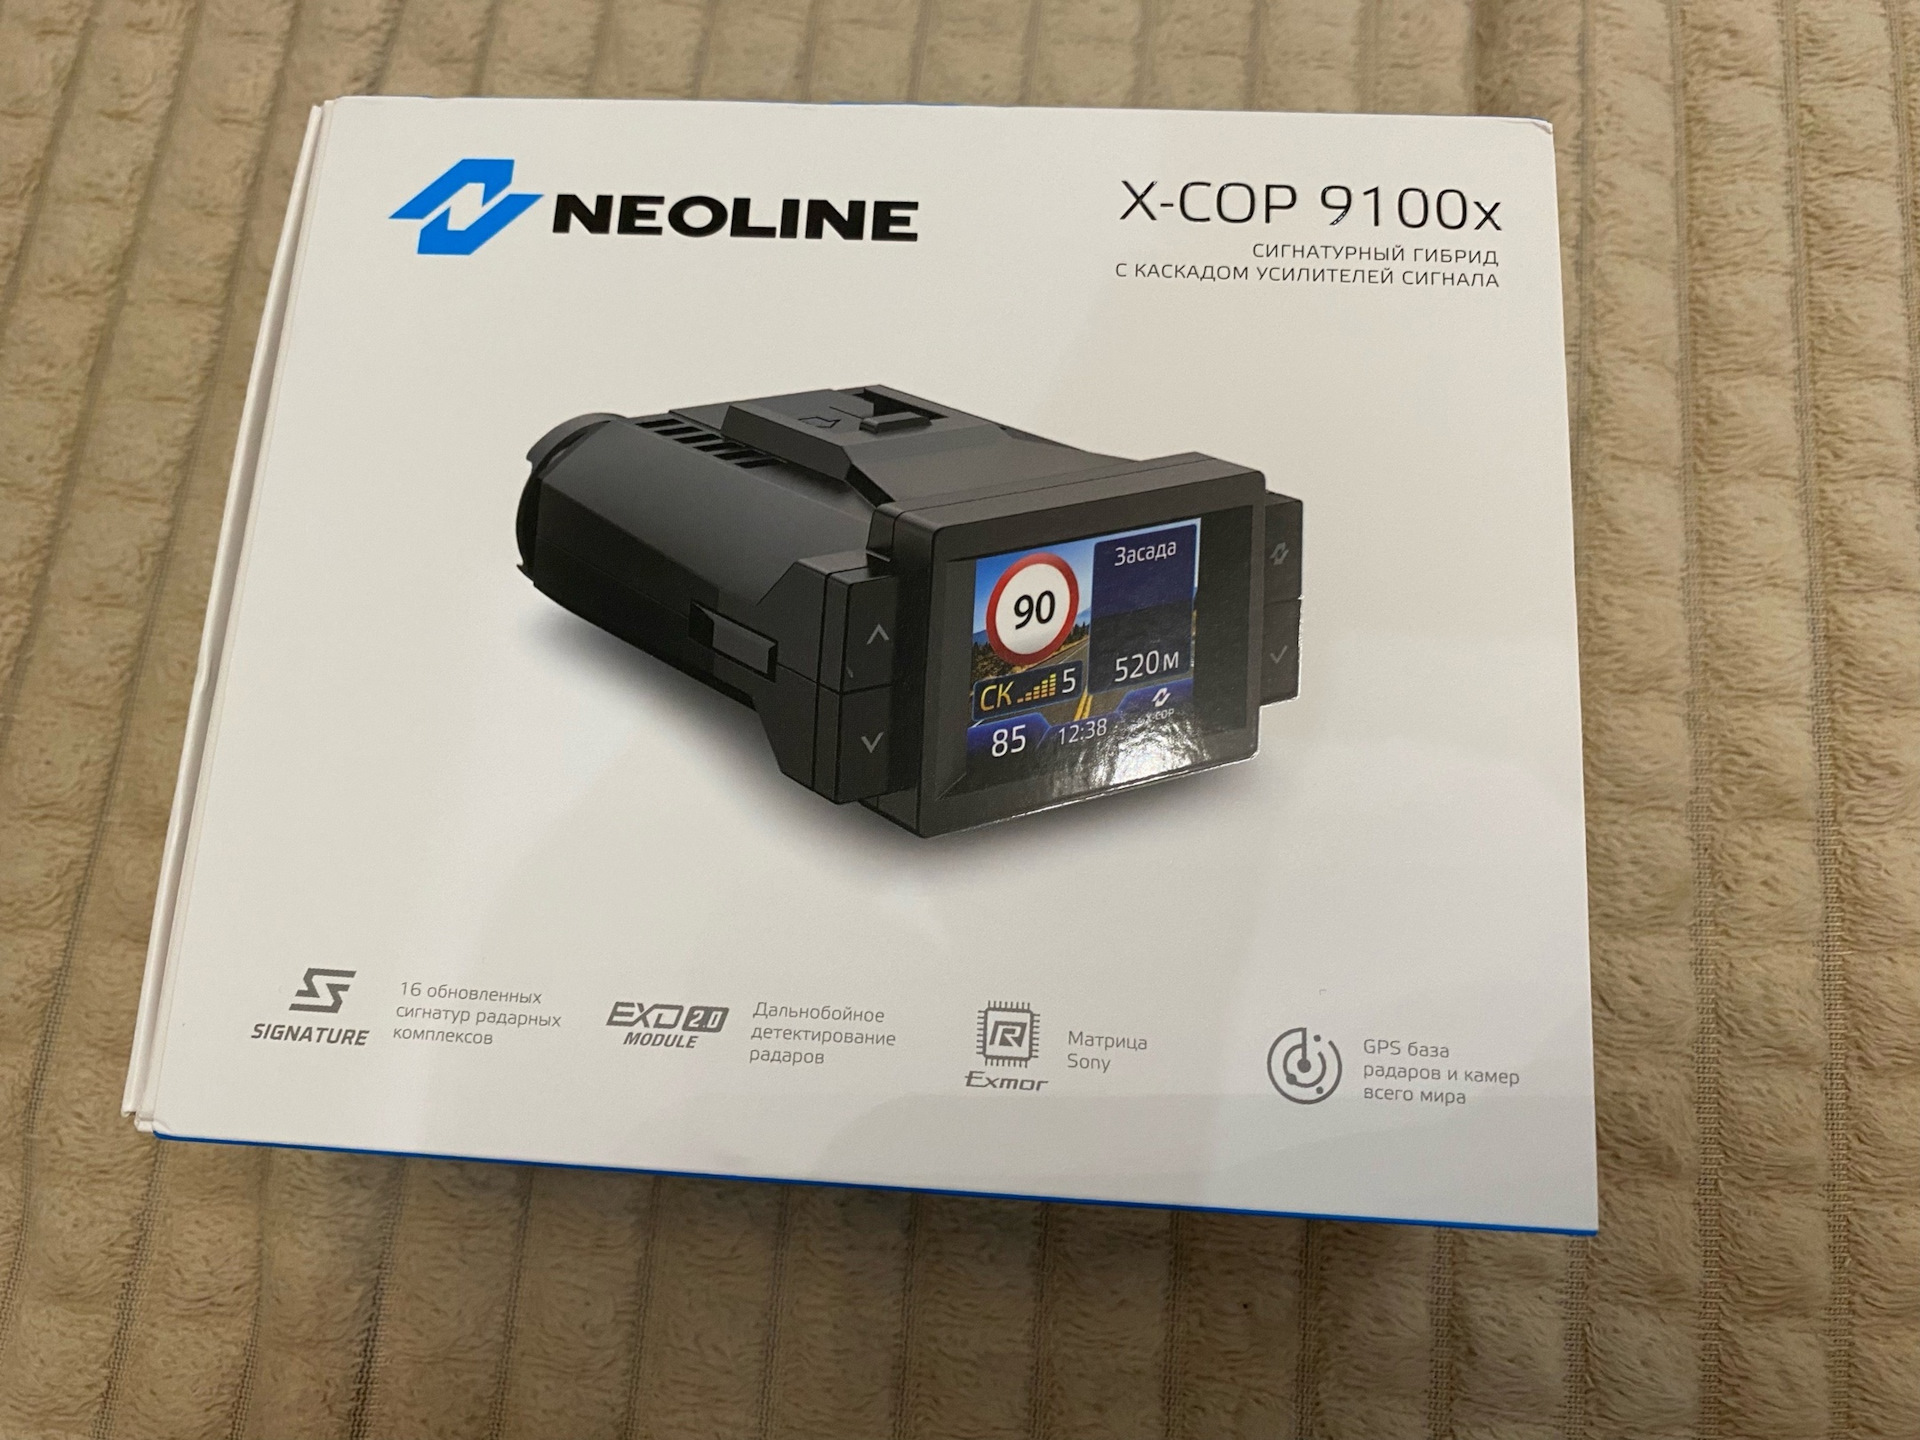 Neoline x-cop 9100x. Сигнатурный гибрид Neoline x-cop 9100x. Neoline x-cop 9100. Neoline x-cop 9100s обновление базы радаров.